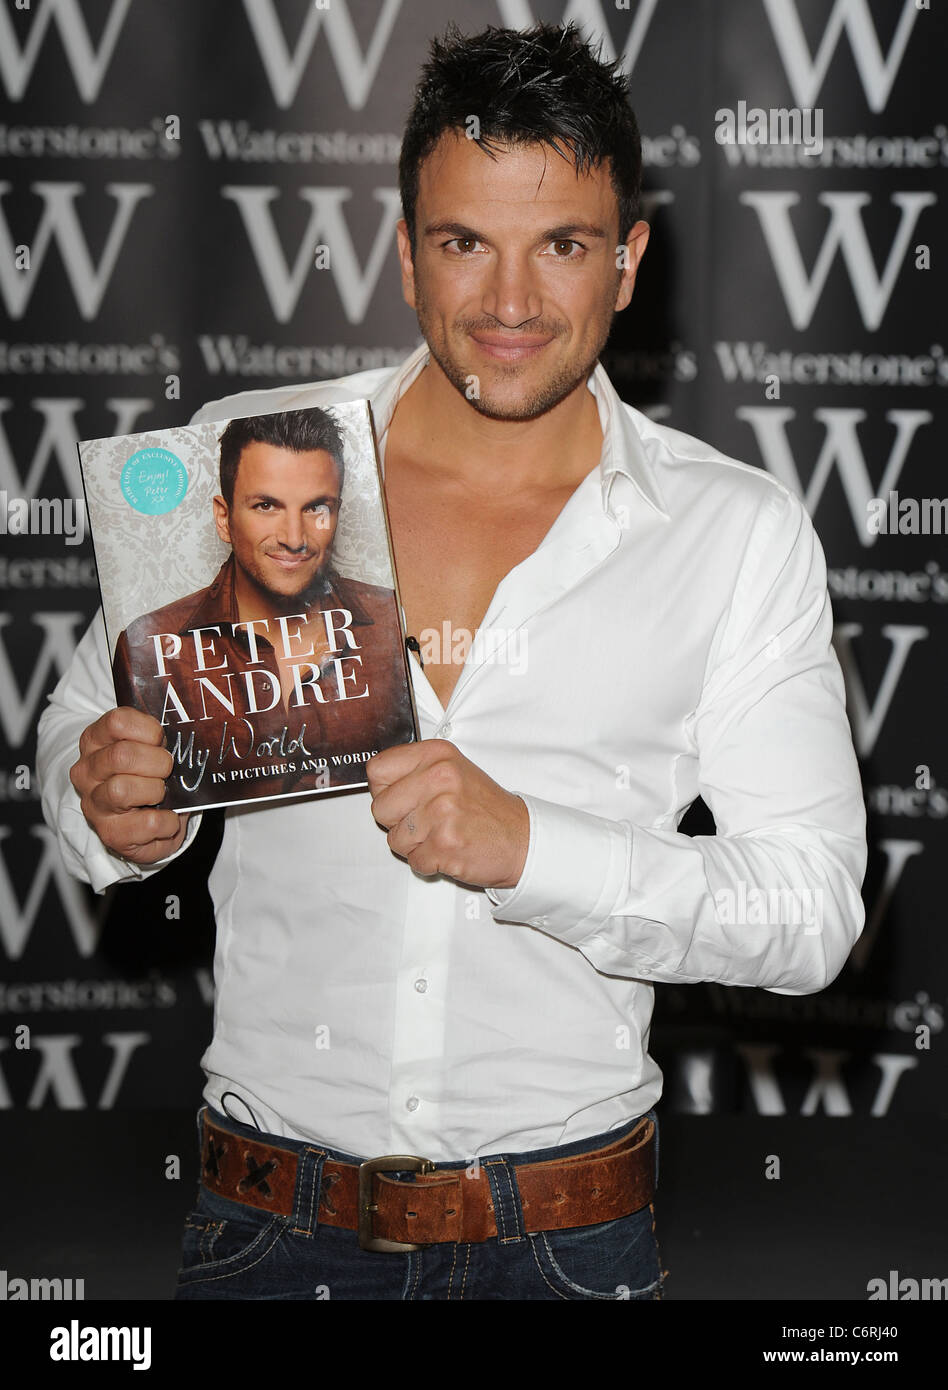 Peter Andre segni copie del suo nuovo libro "My World" a Waterstone di Piccadilly, Londra Inghilterra- 10.06.10 Foto Stock